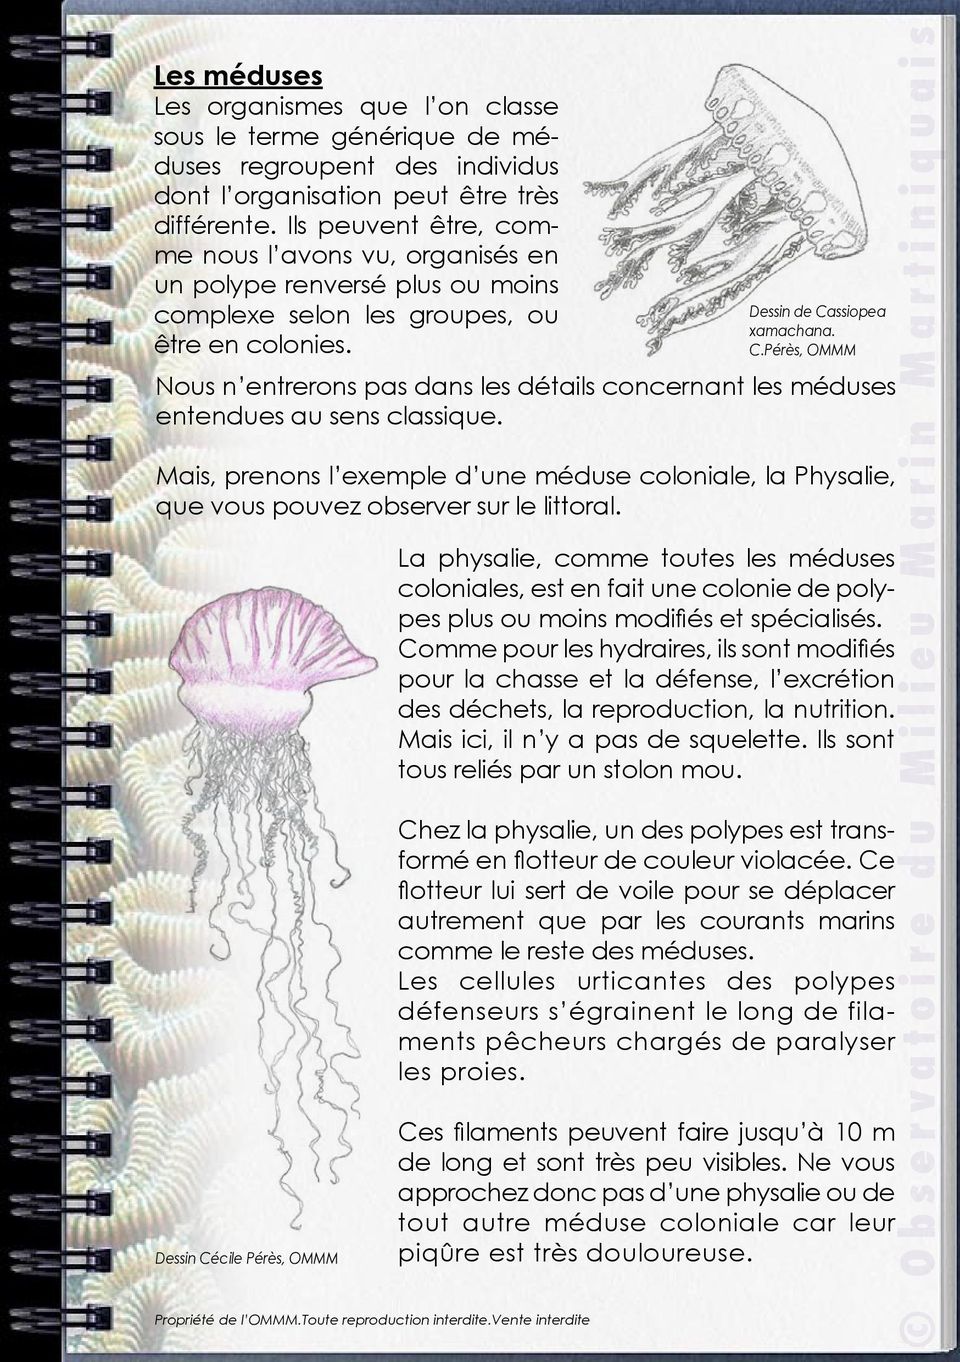 Nous n entrerons pas dans les détails concernant les méduses entendues au sens classique. Mais, prenons l exemple d une méduse coloniale, la Physalie, que vous pouvez observer sur le littoral.